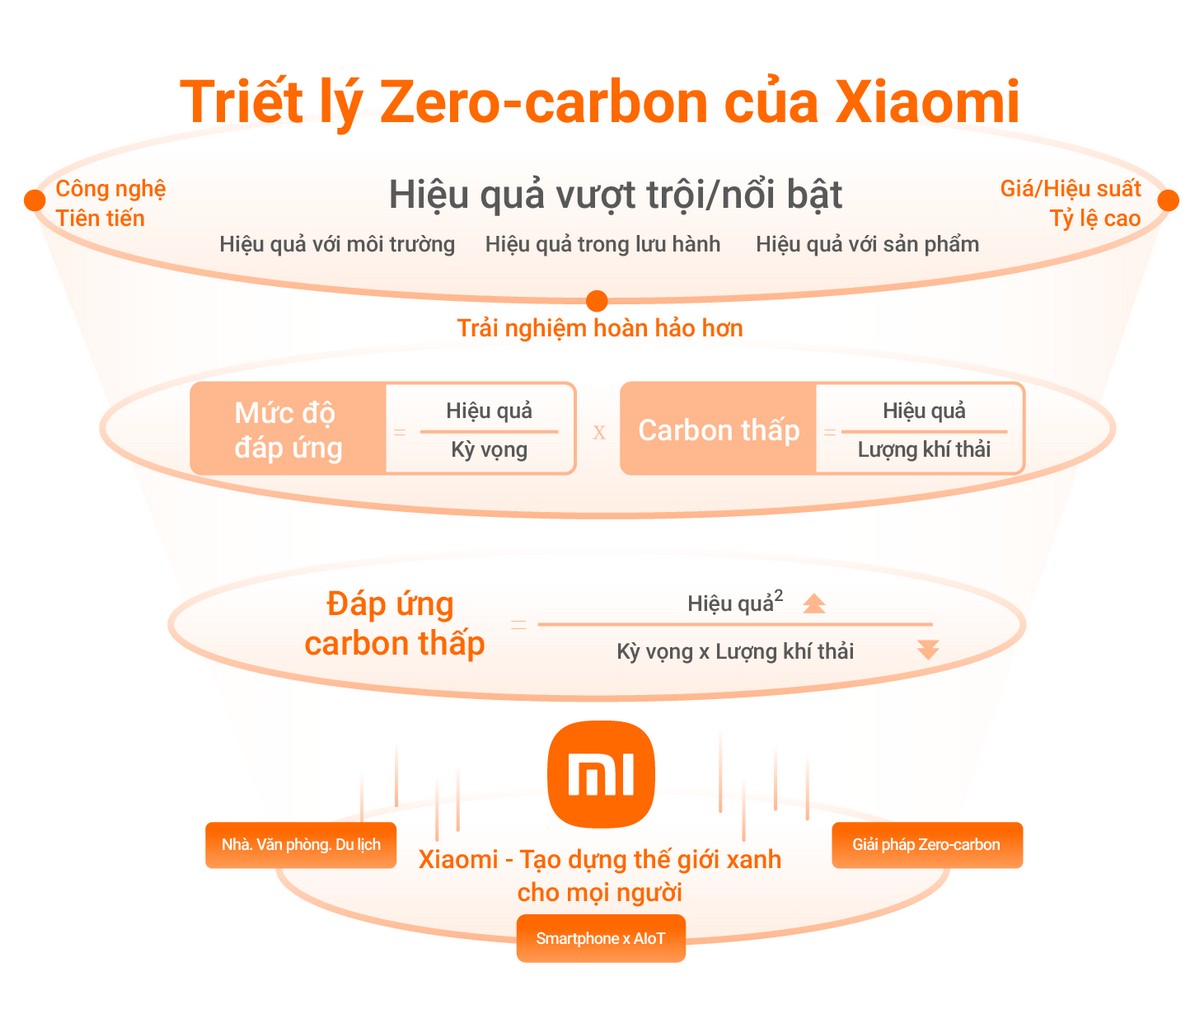 Xiaomi đặt mục tiêu cắt giảm 98% phát thải khí nhà kính